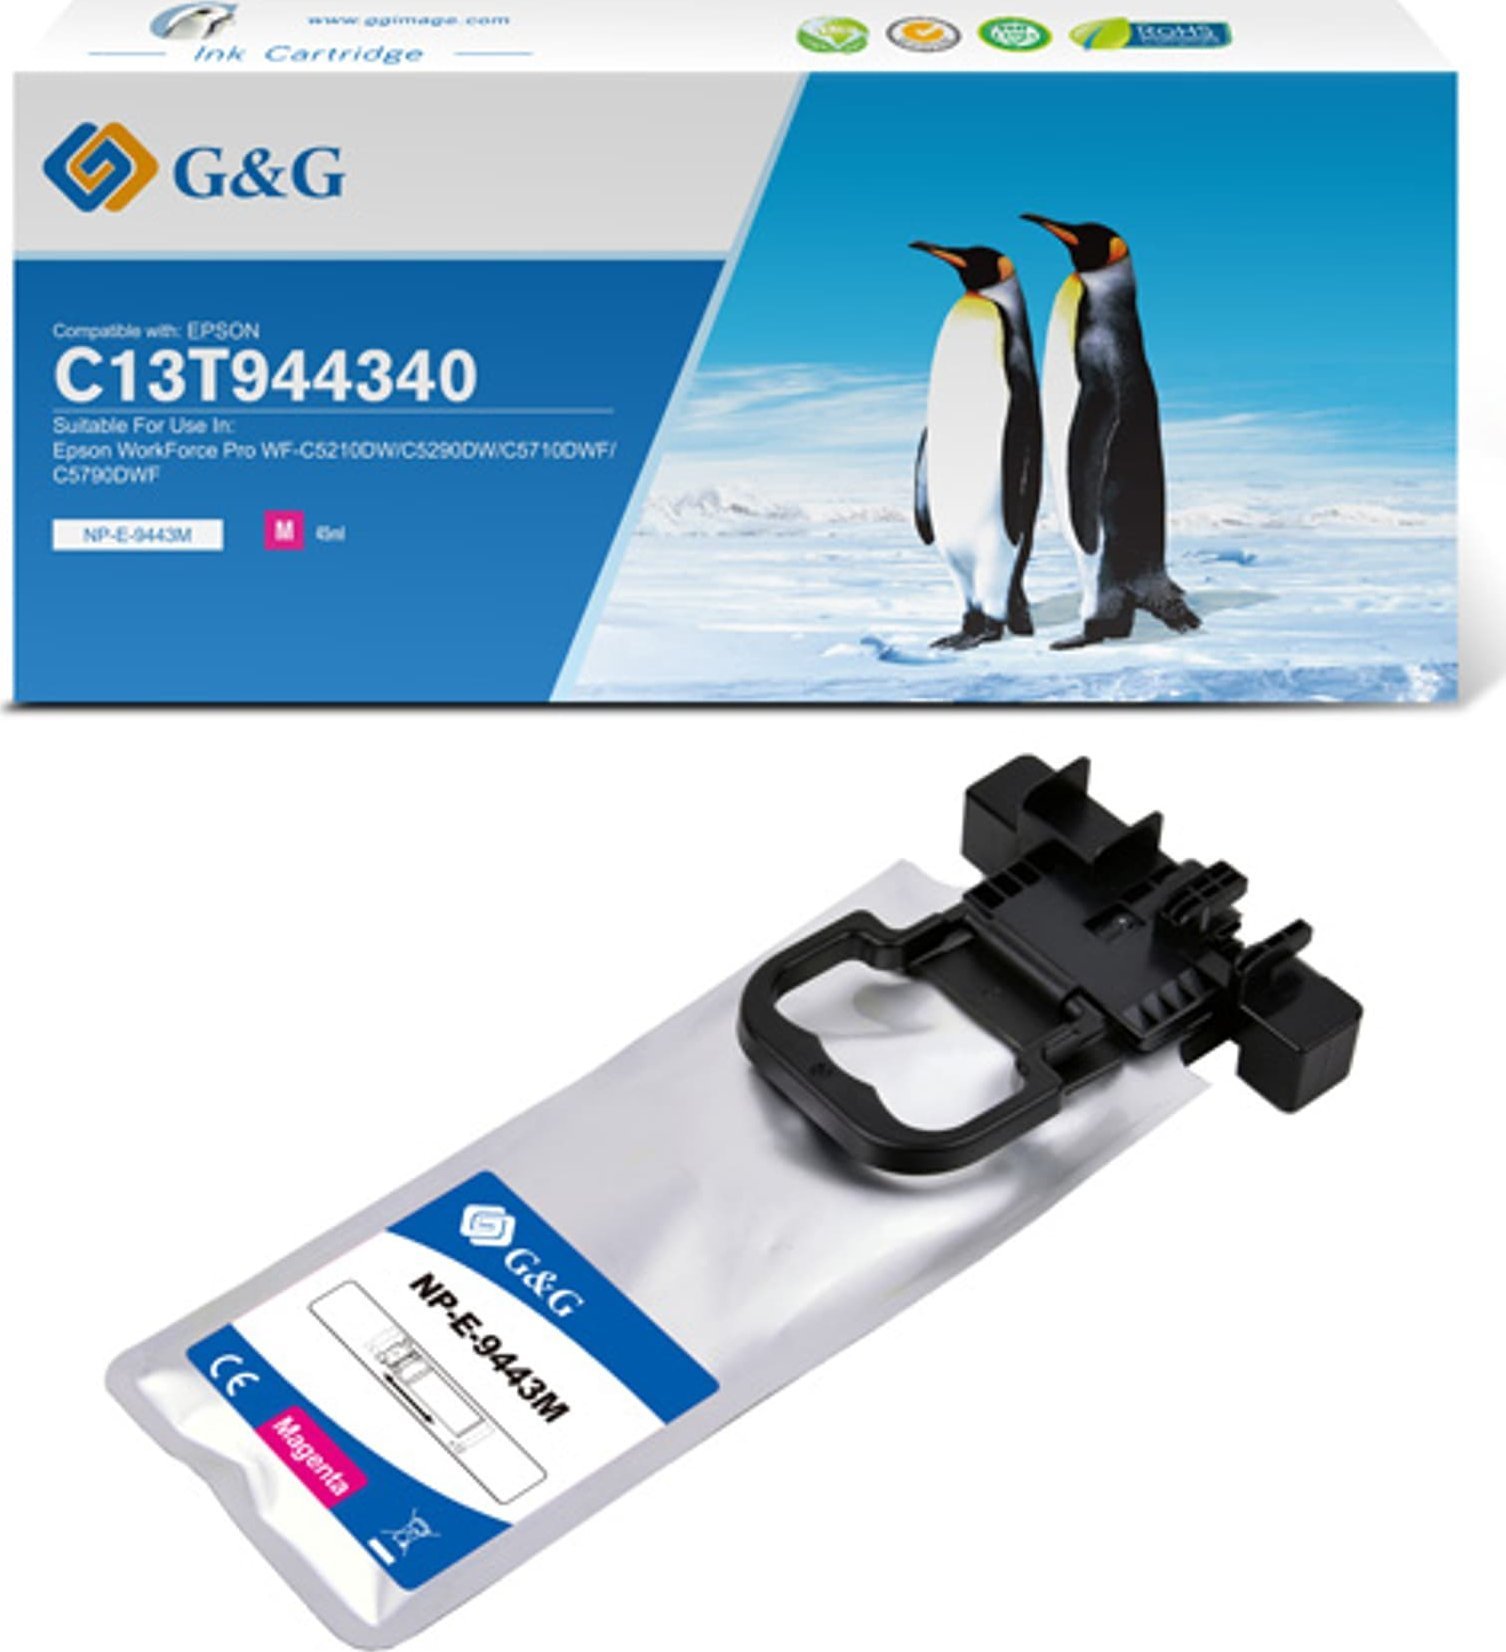 G&G Cerneală/cerneală compatibilă G&G cu C13T944340, magenta, 3000s, NP-E-9443M, pentru Epson WF-C5210, C5290, C5710, C5790